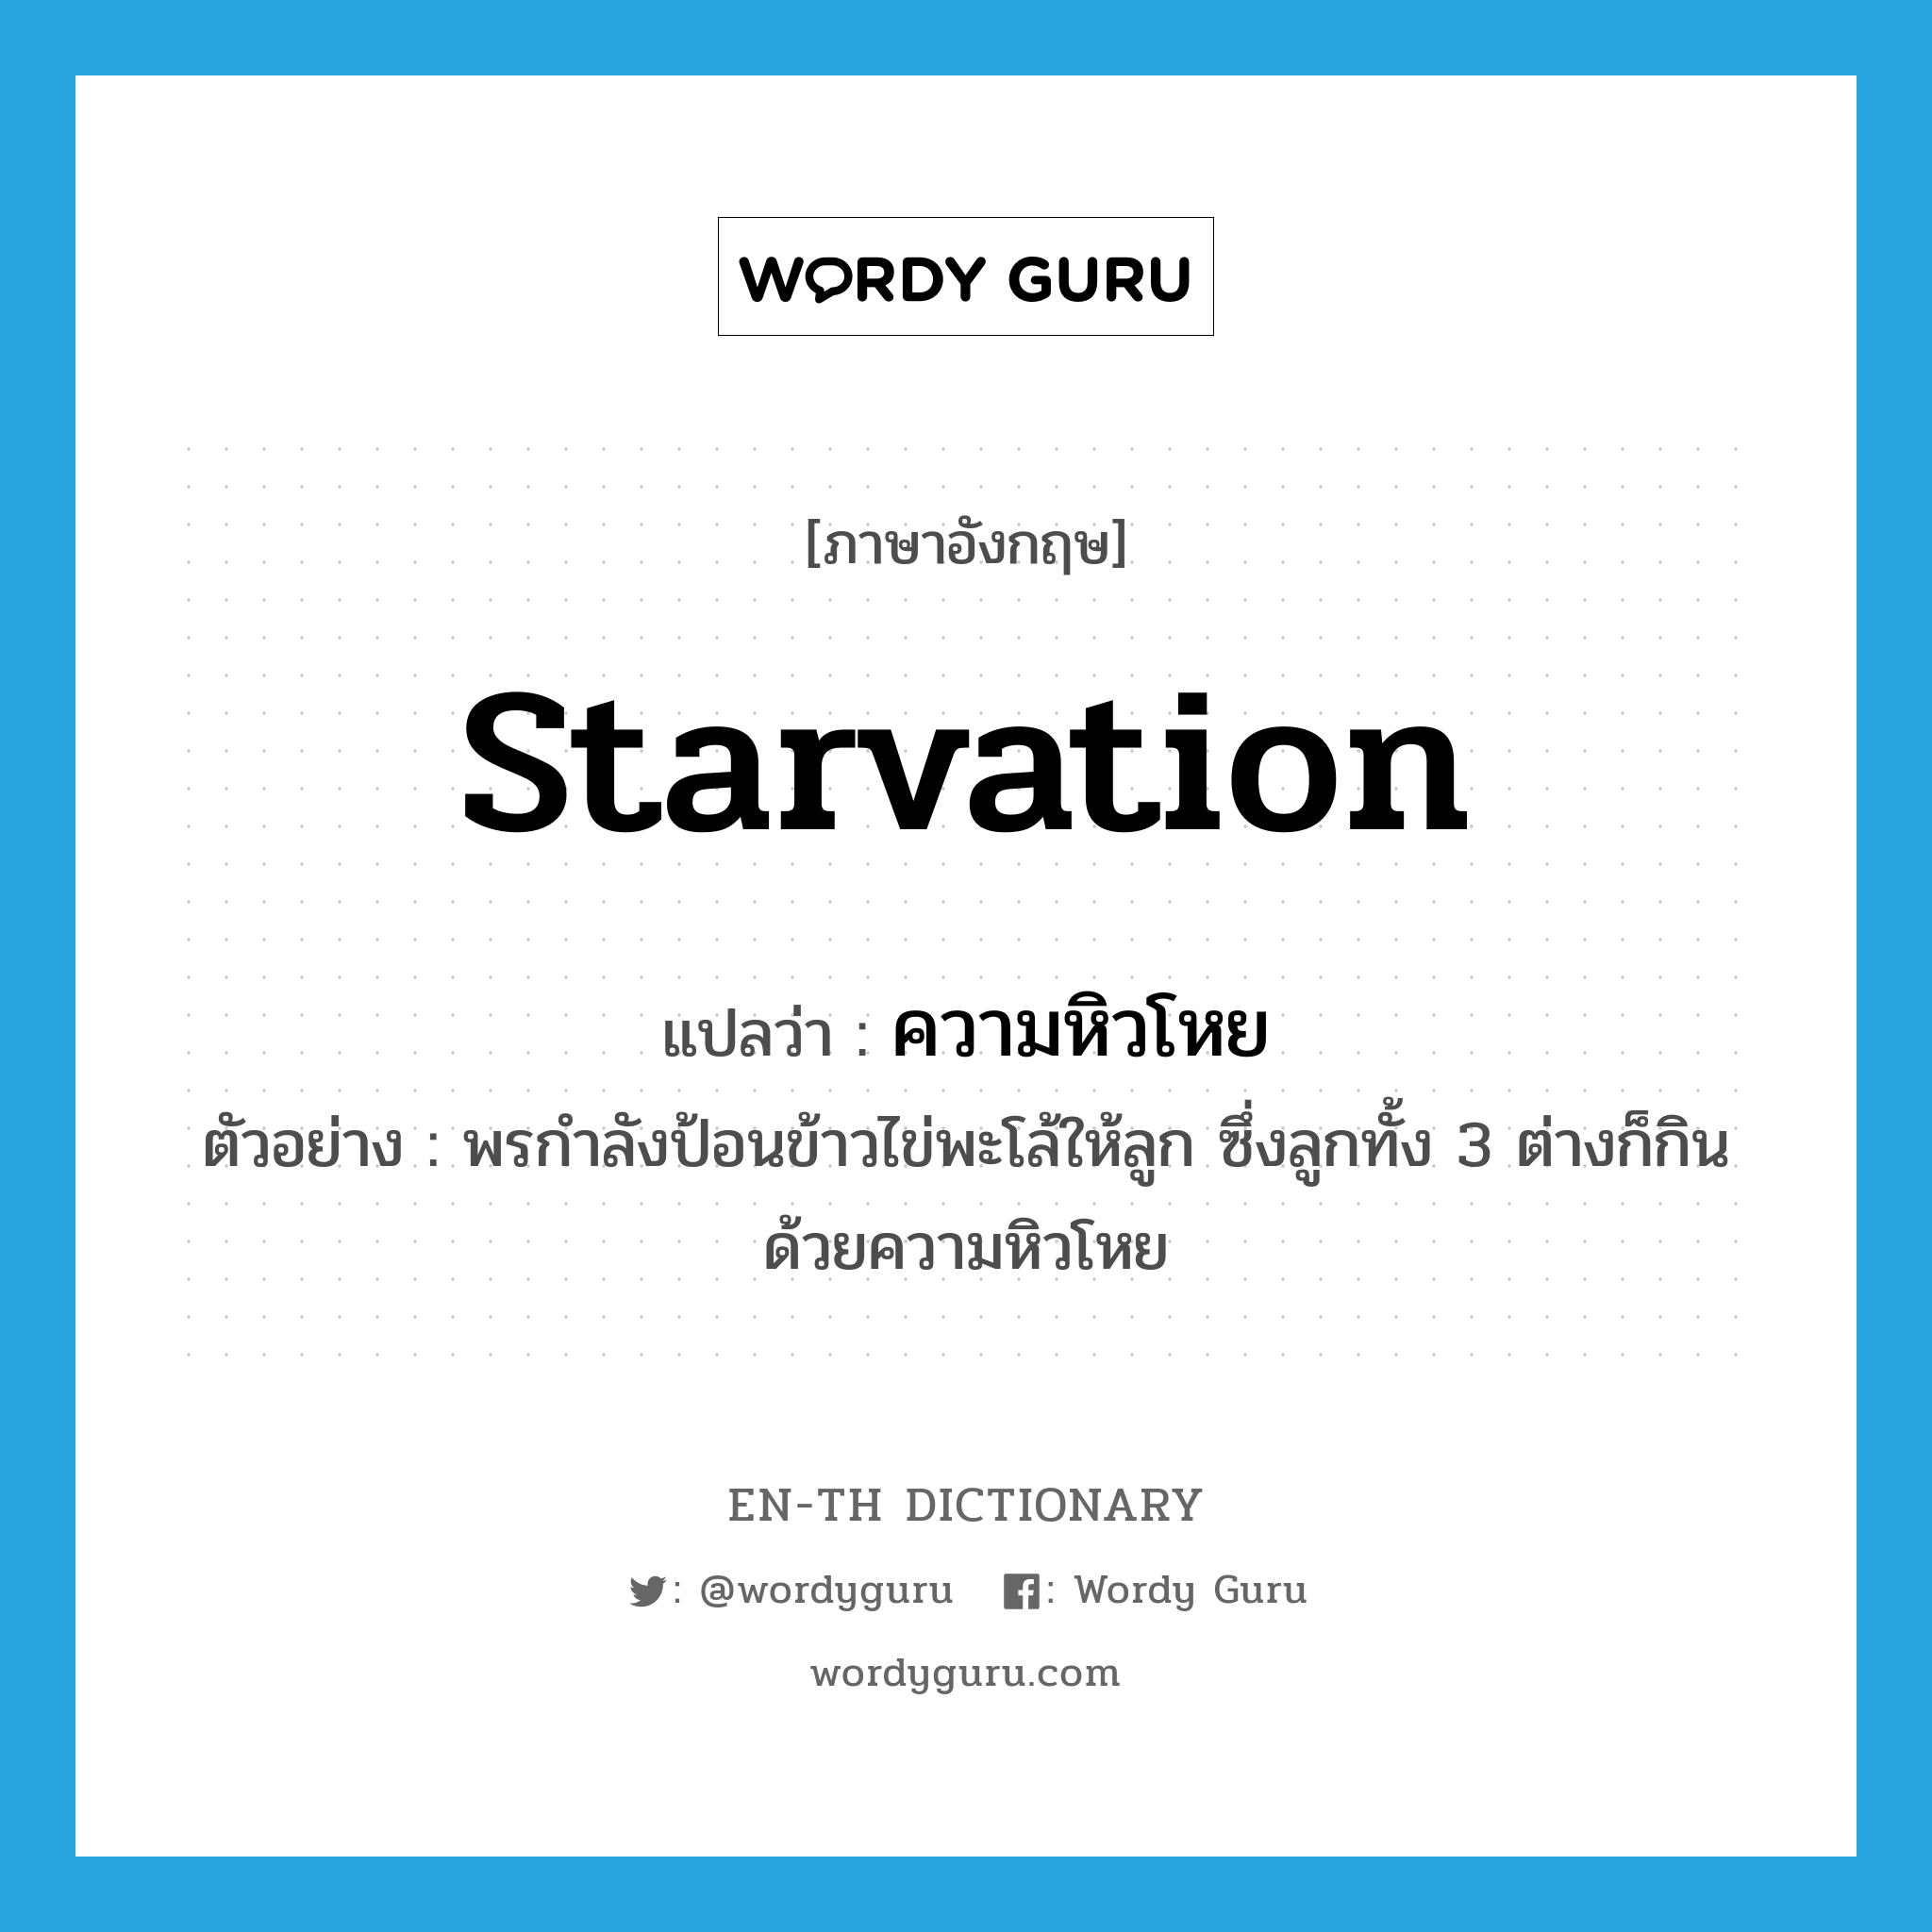 starvation แปลว่า?, คำศัพท์ภาษาอังกฤษ starvation แปลว่า ความหิวโหย ประเภท N ตัวอย่าง พรกำลังป้อนข้าวไข่พะโล้ให้ลูก ซึ่งลูกทั้ง 3 ต่างก็กินด้วยความหิวโหย หมวด N